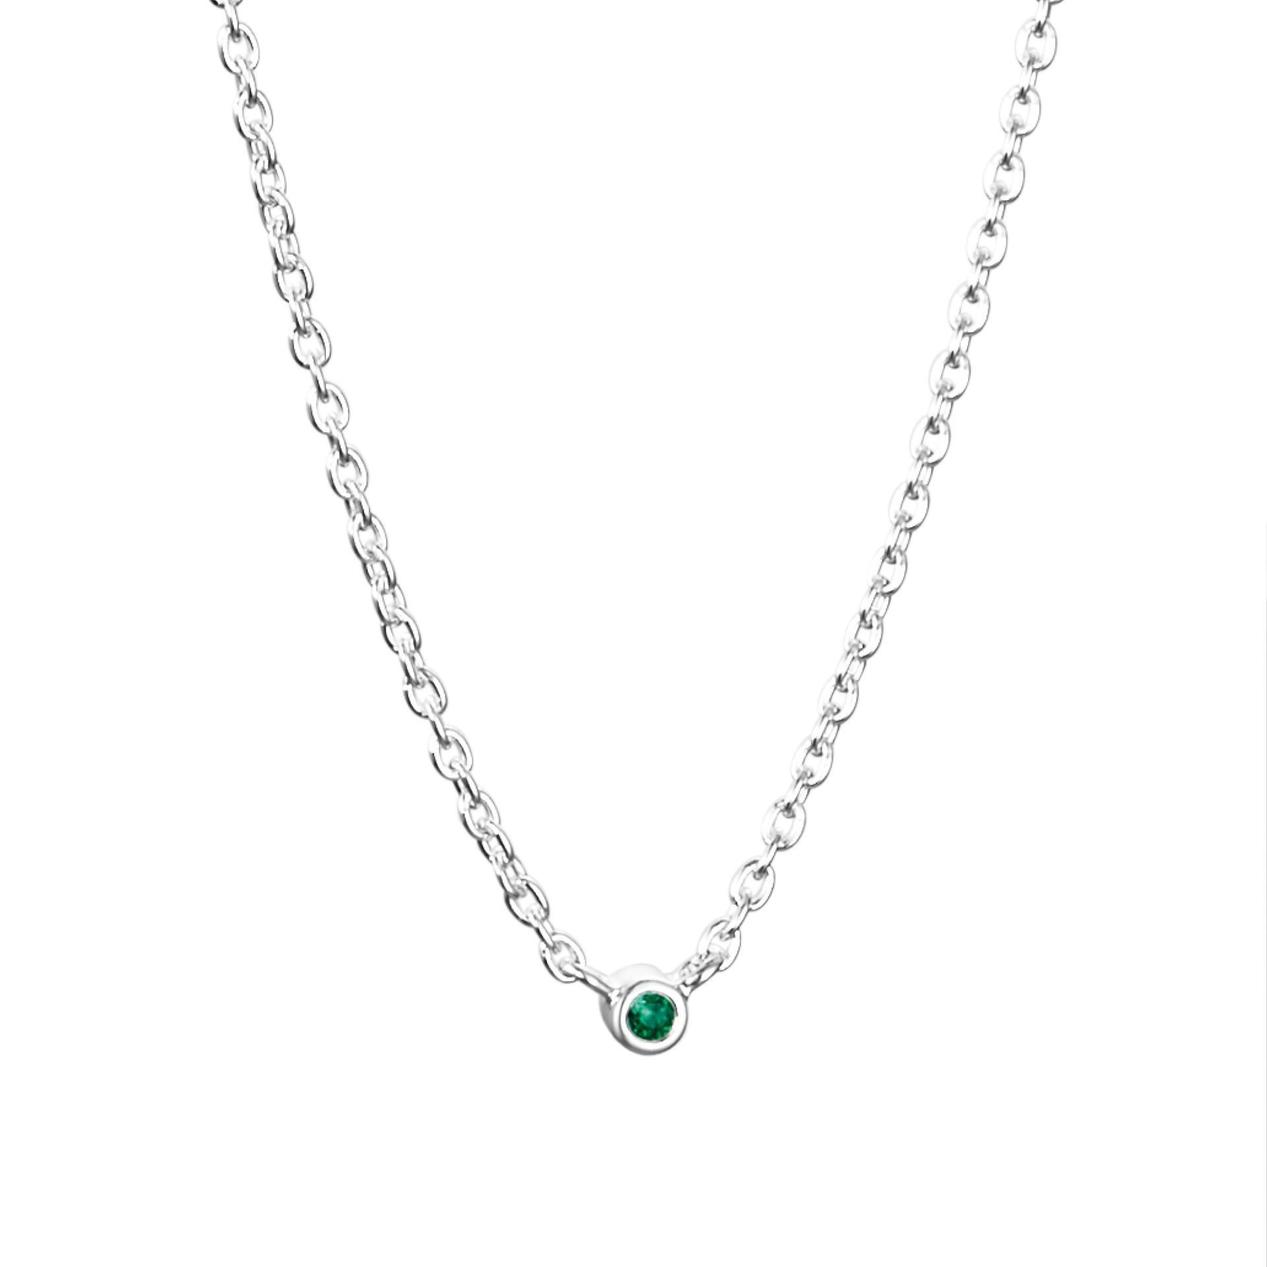 Micro Blink Necklace - Green Emerald för 1100 kr på Efva Attling